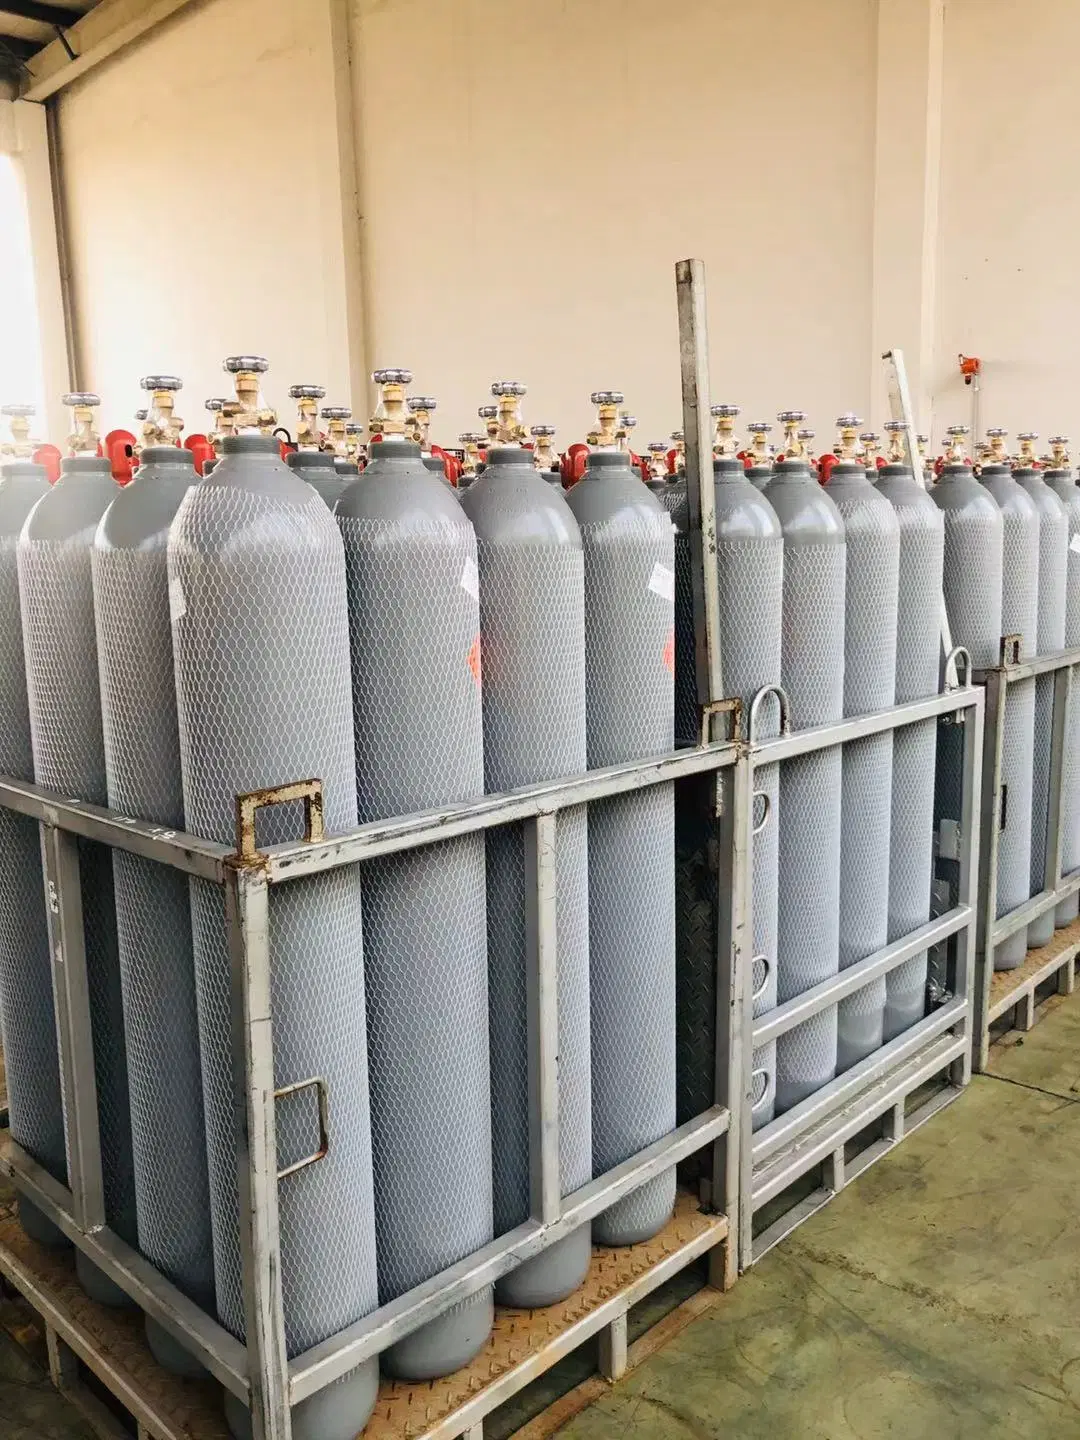 Поставки газа на завод в Китае высококачественный двухцилиндровый газовый ацетилен C2h2